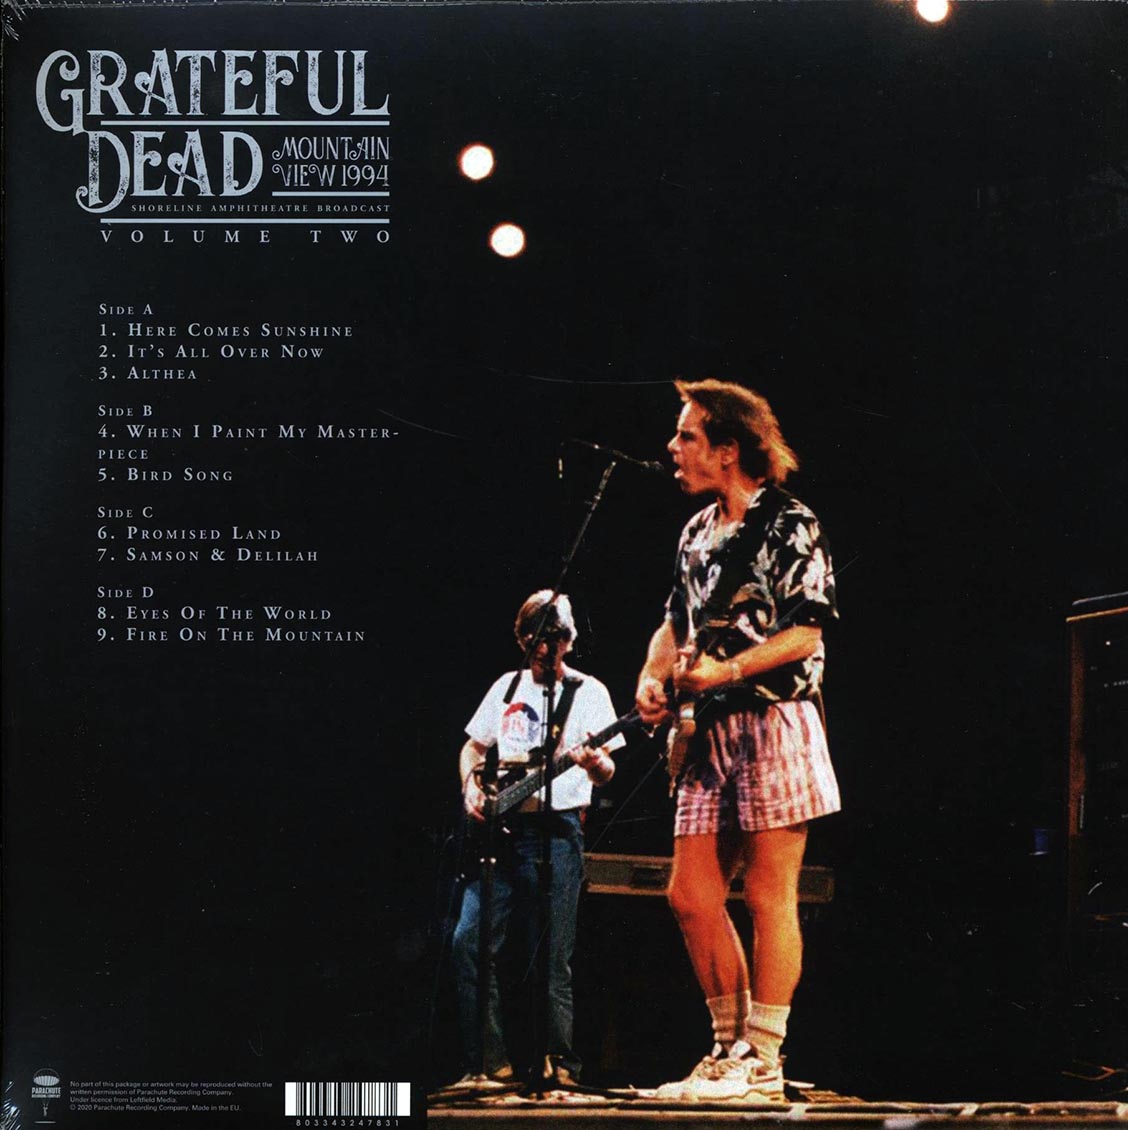 Grateful Dead - Mountain View 1994 Volume 2: Shoreline Amphitheatre Broadcast (2xLP) - Vinyl LP, LP